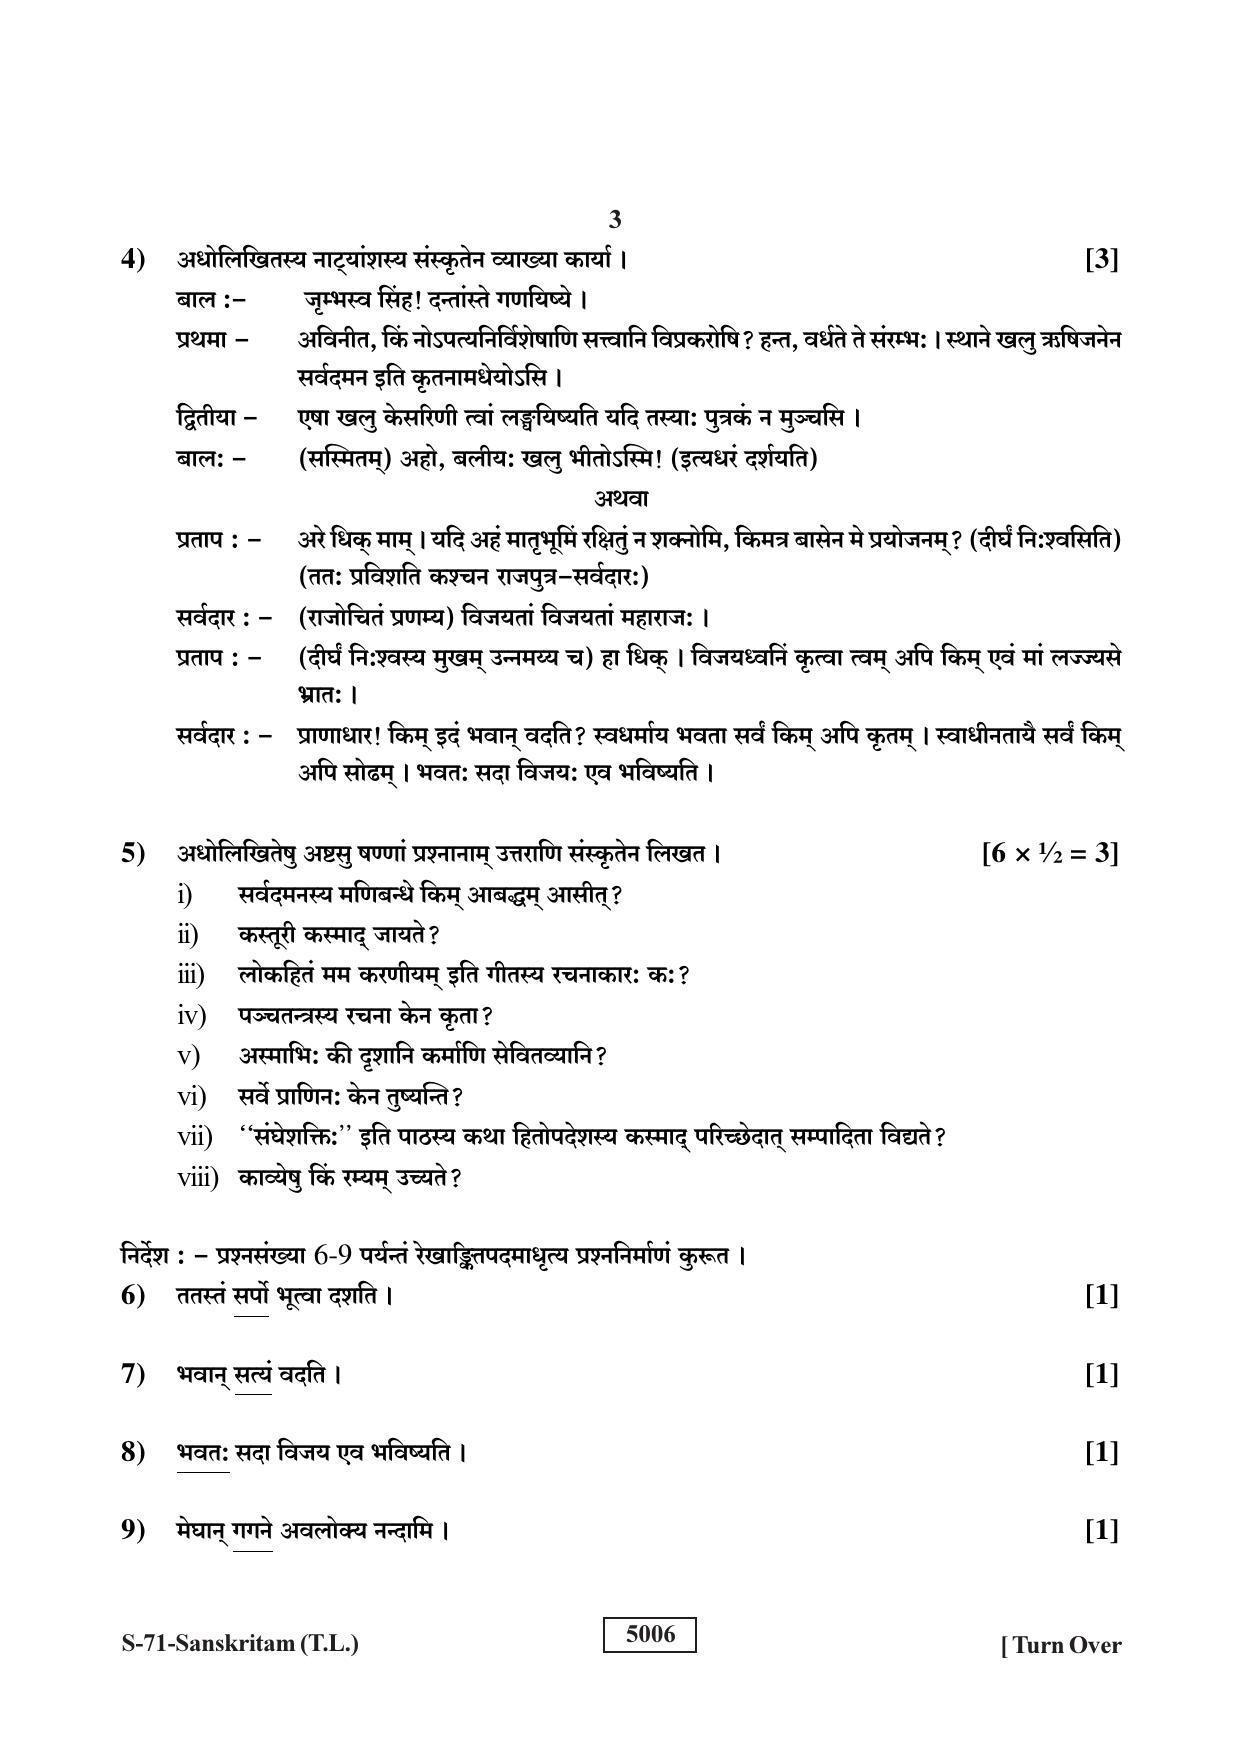 RBSE Class 10 Sanskrit (T.L.) 2019 Question Paper - Page 3